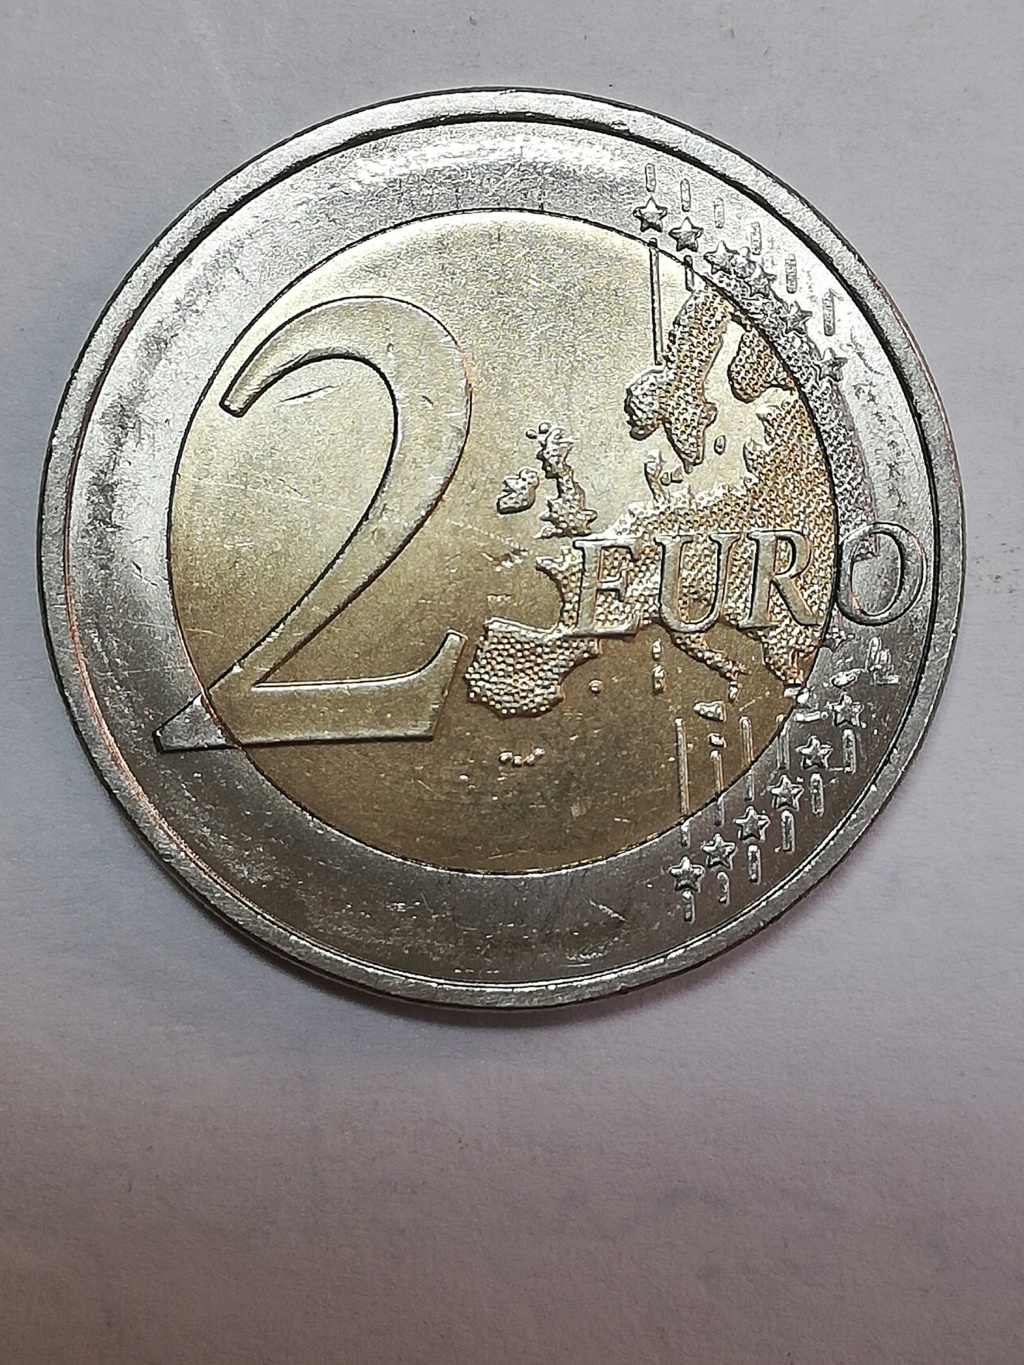 2 euros 2008, Alemania J. Img_2300